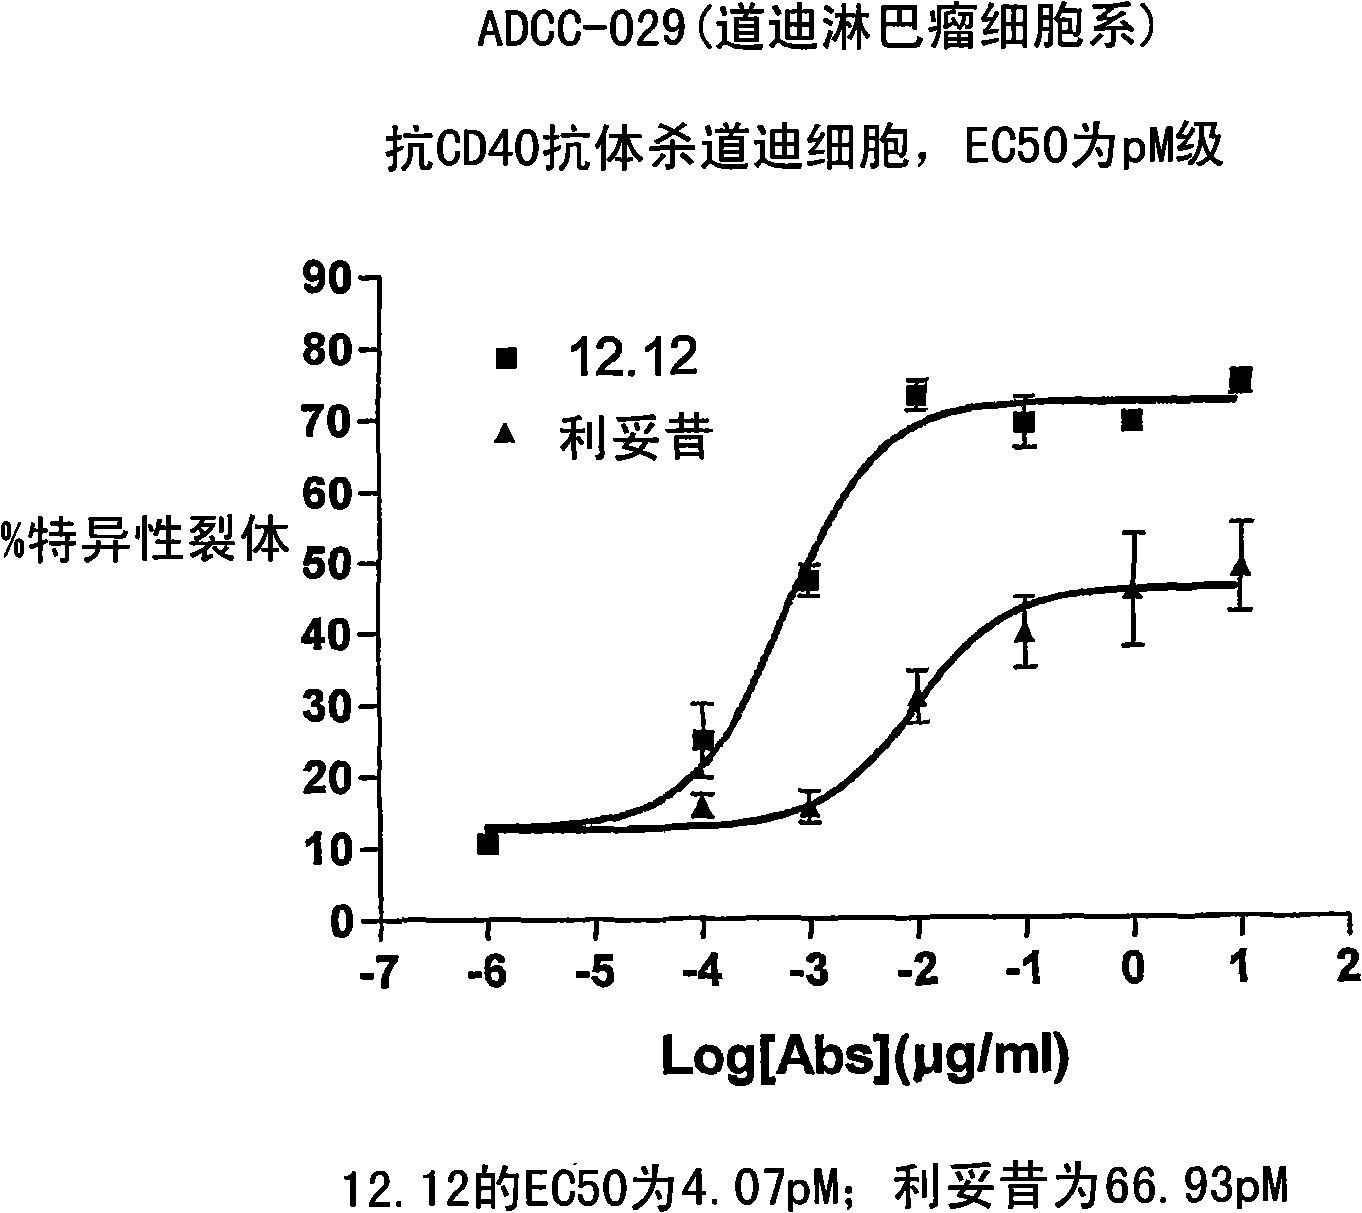 Uses of anti-CD40 antibodies